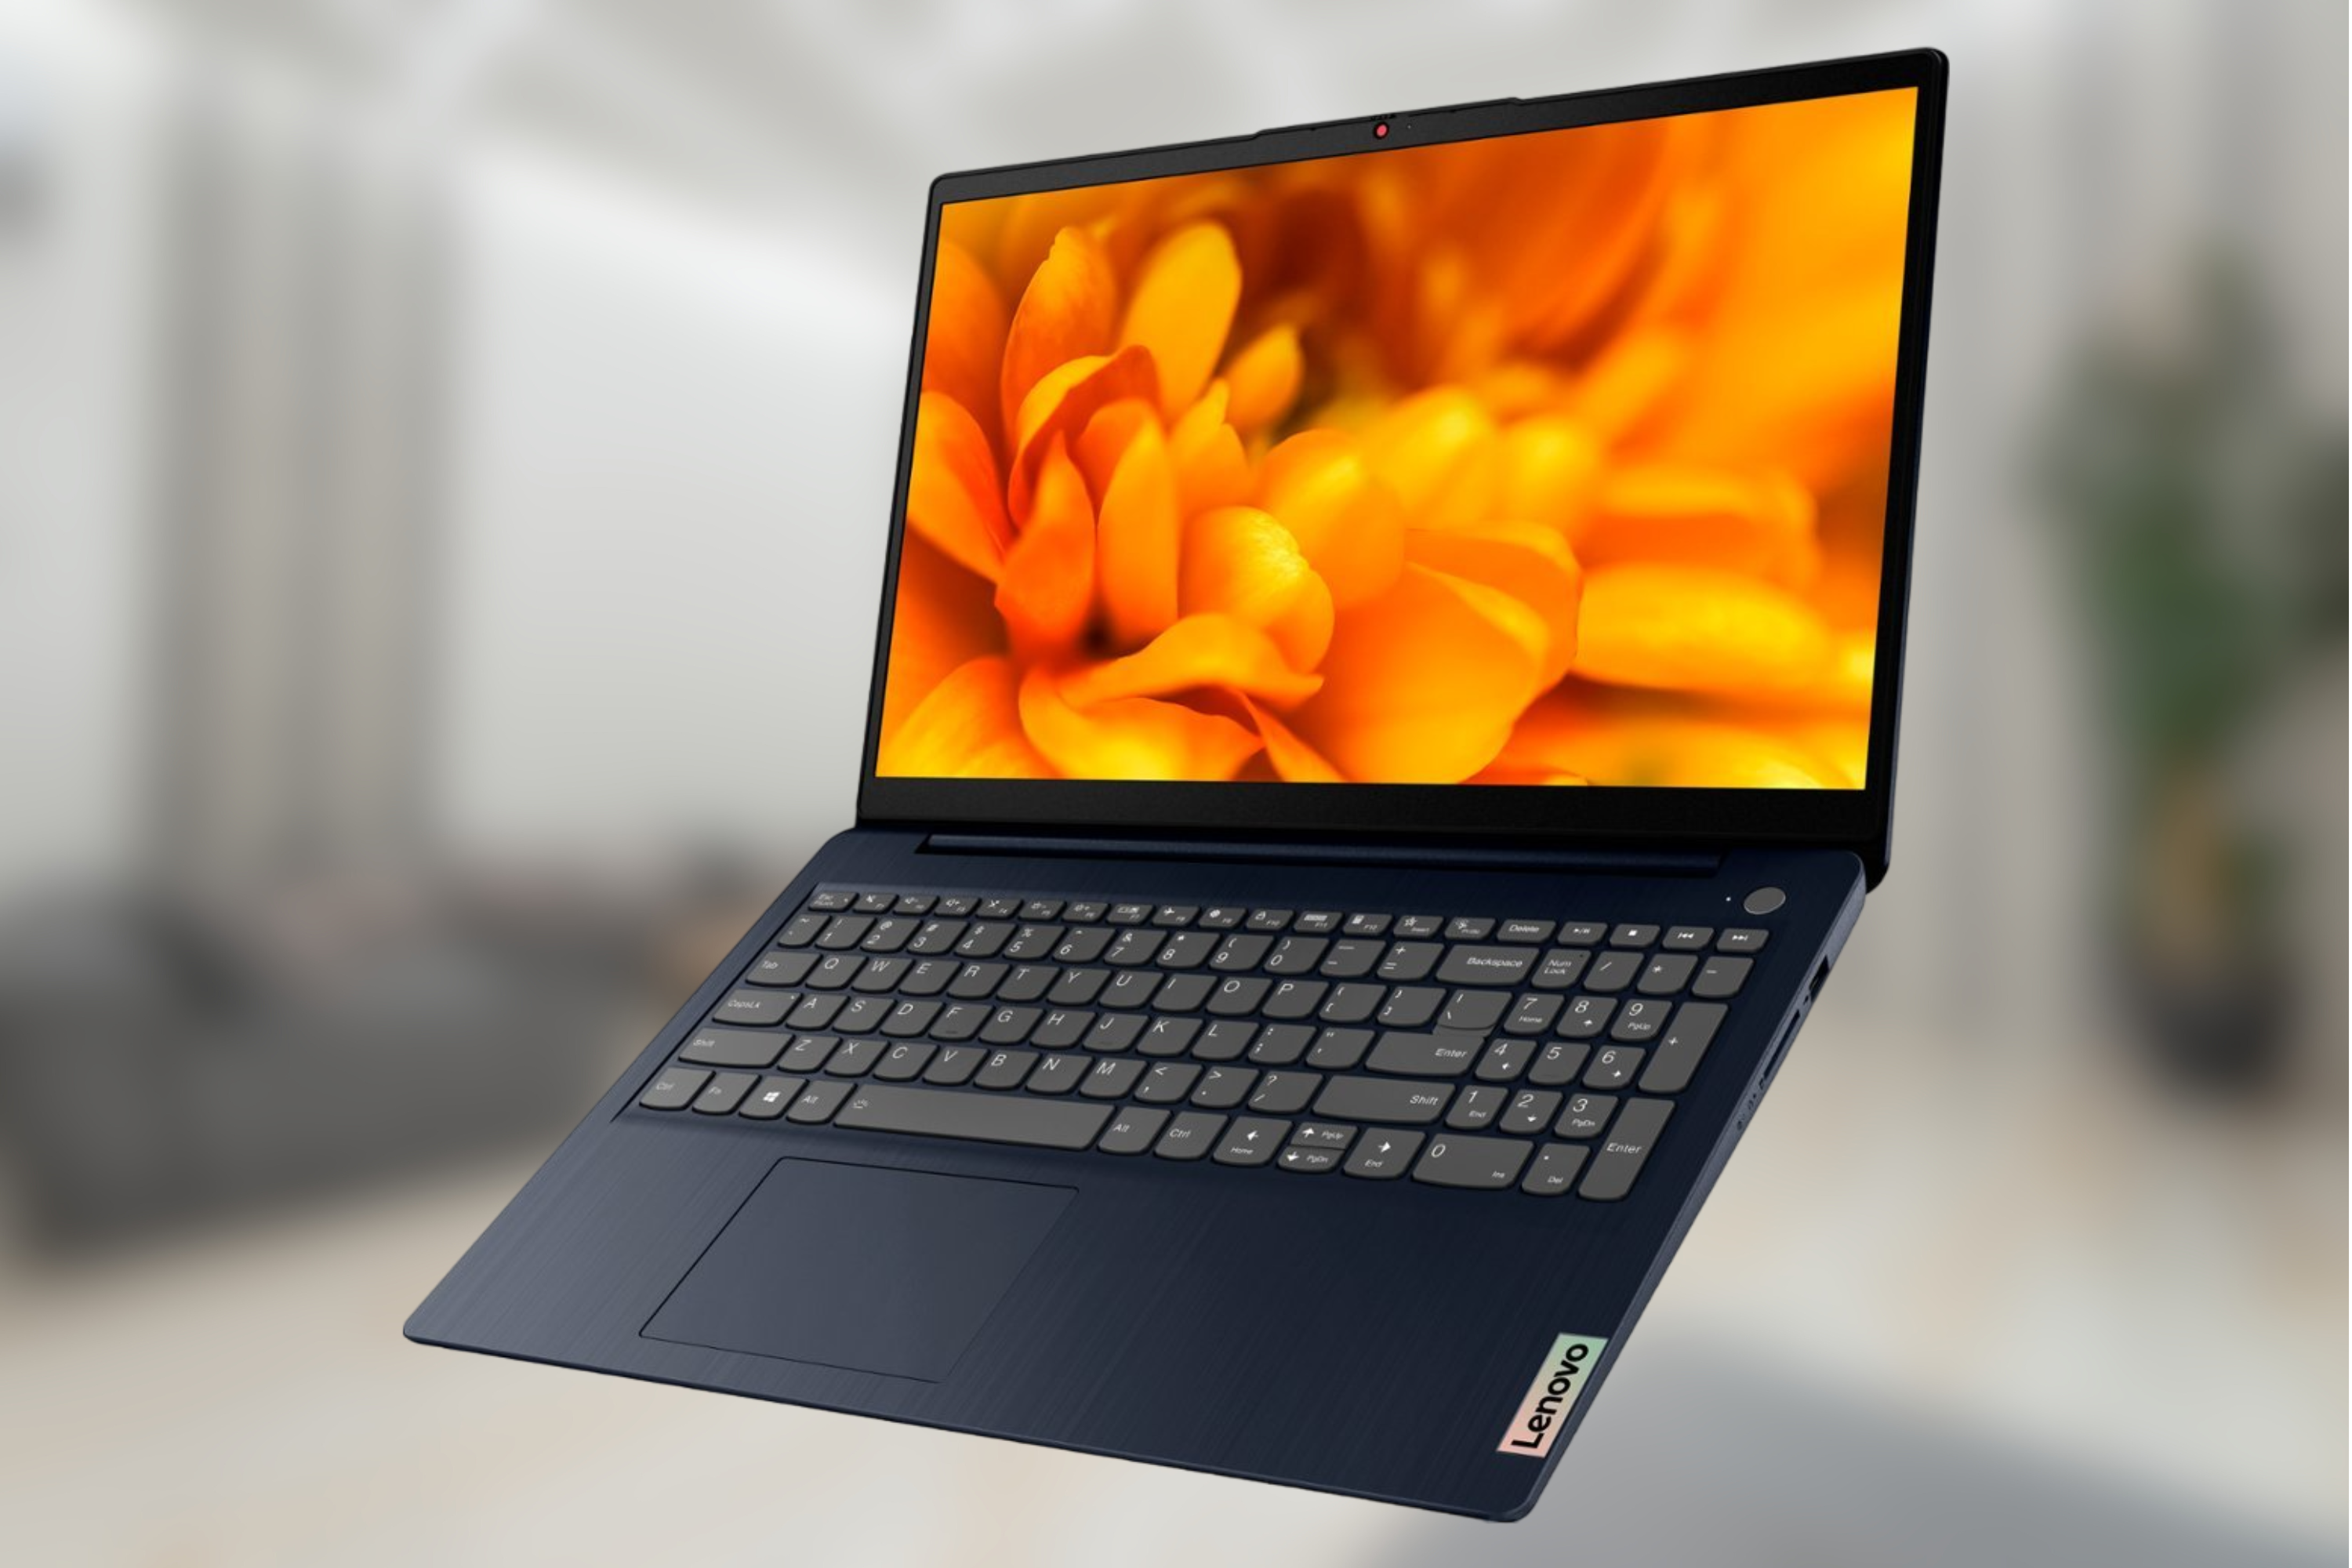 Lenovo Ideapad 3i laptop on blurred background